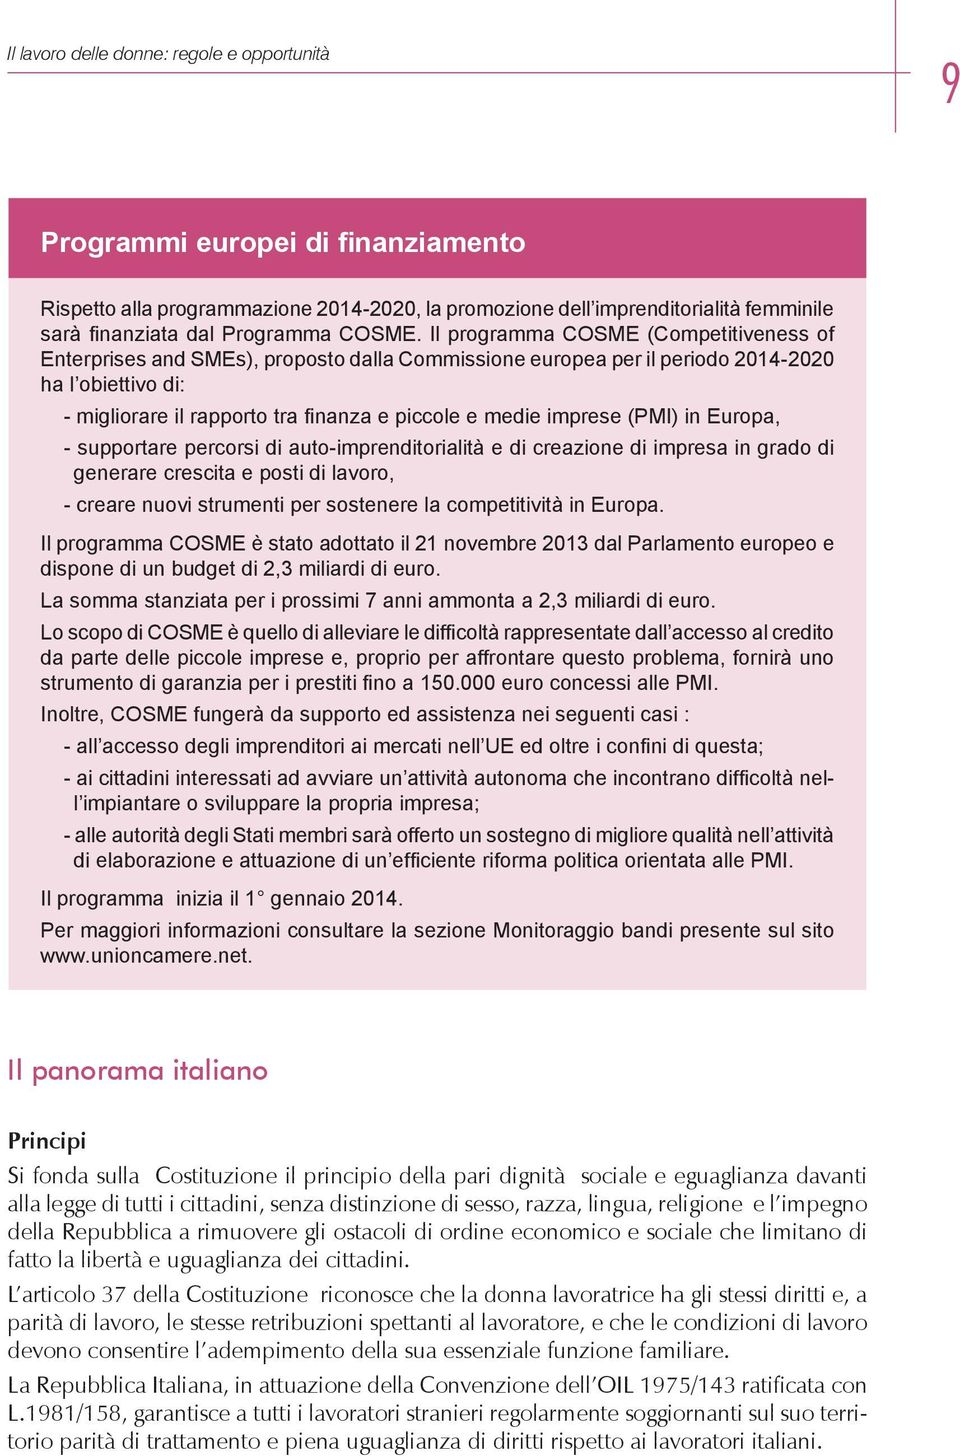 Il programma COSME (Competitiveness of Enterprises and SMEs), proposto dalla Commissione europea per il periodo 2014-2020 ha l obiettivo di: - migliorare il rapporto tra finanza e piccole e medie